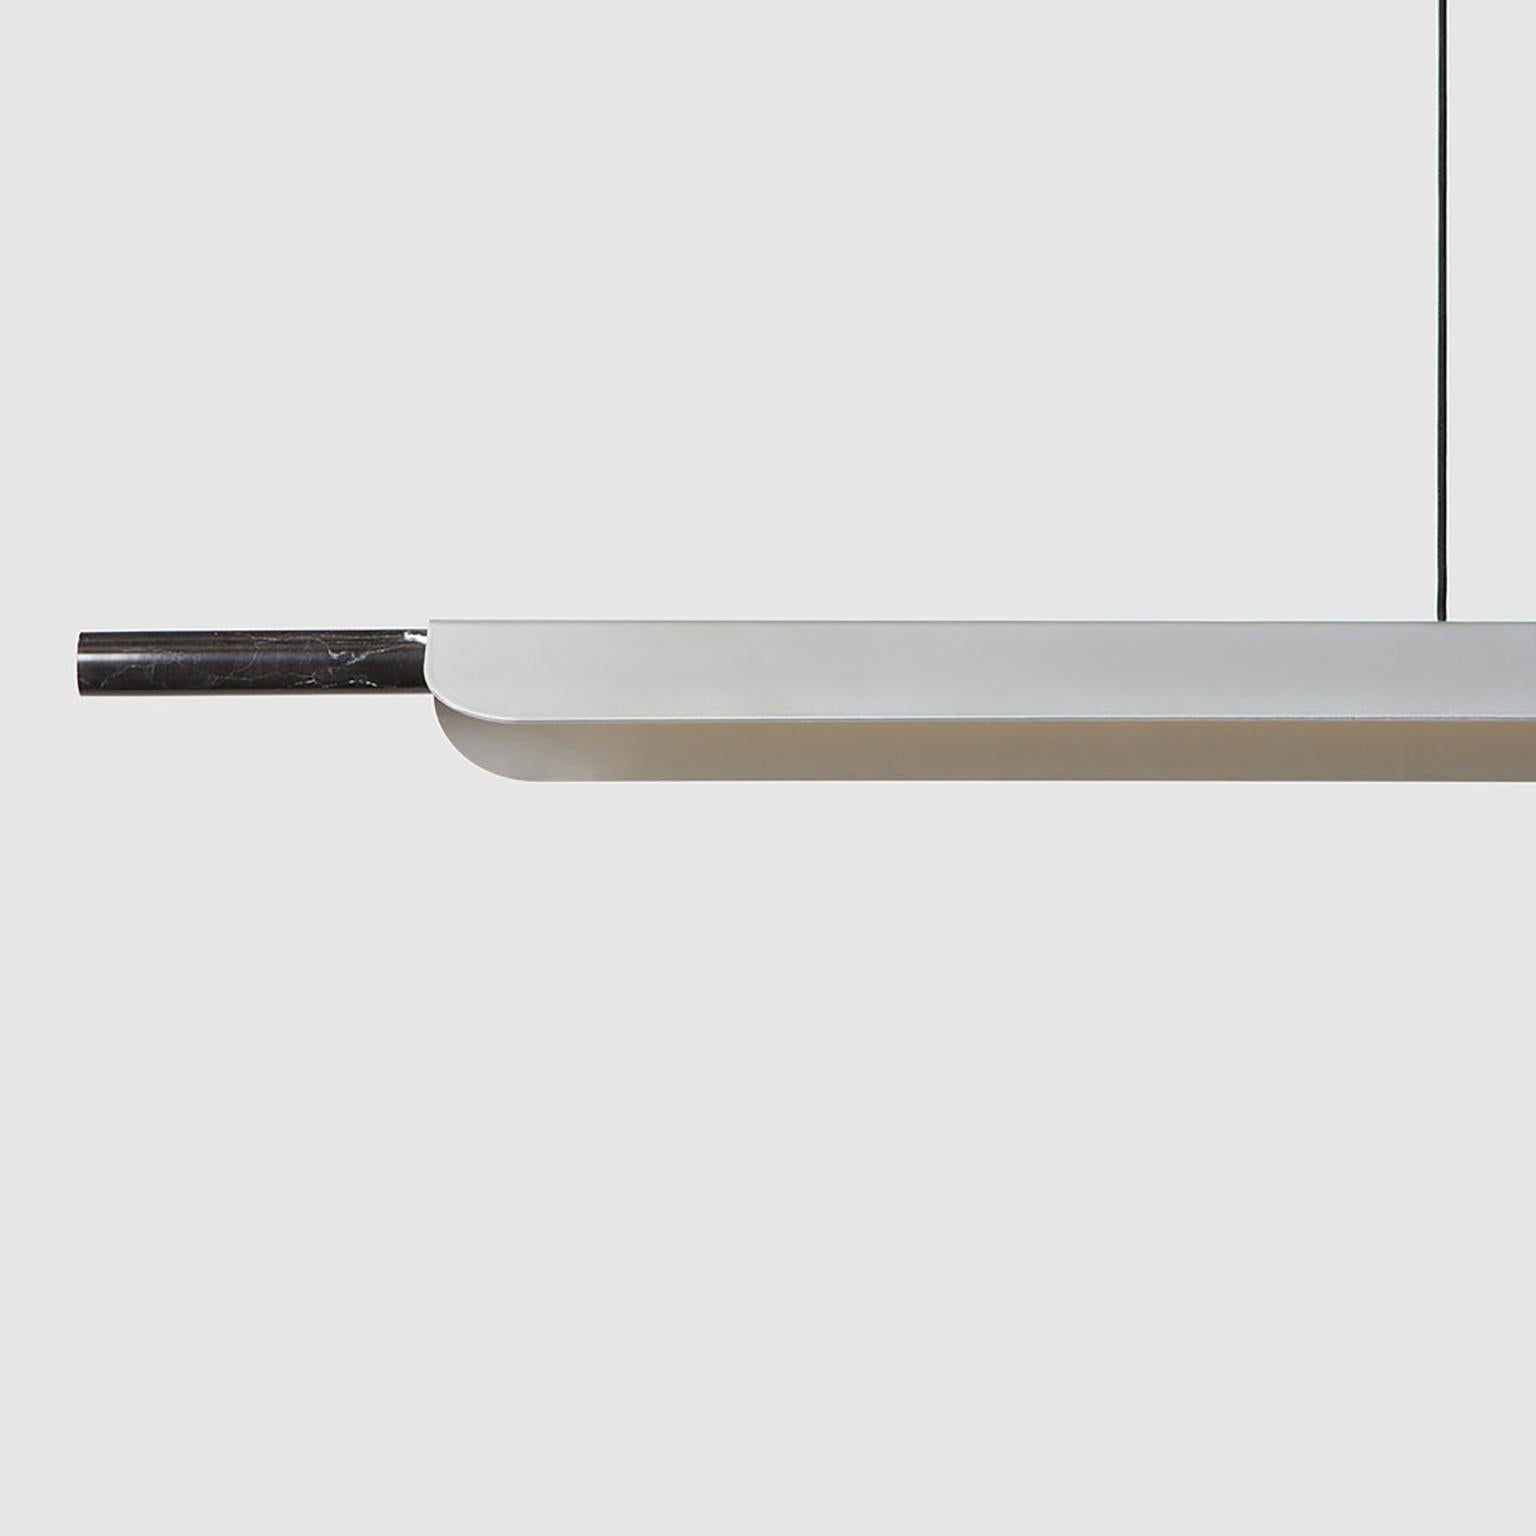 Formation Linear est un luminaire élégant et luxueux en aluminium et en marbre, idéal pour être suspendu au-dessus des îlots de cuisine, des tables à manger, des espaces de travail et d'autres environnements qui nécessitent un éclairage fonctionnel